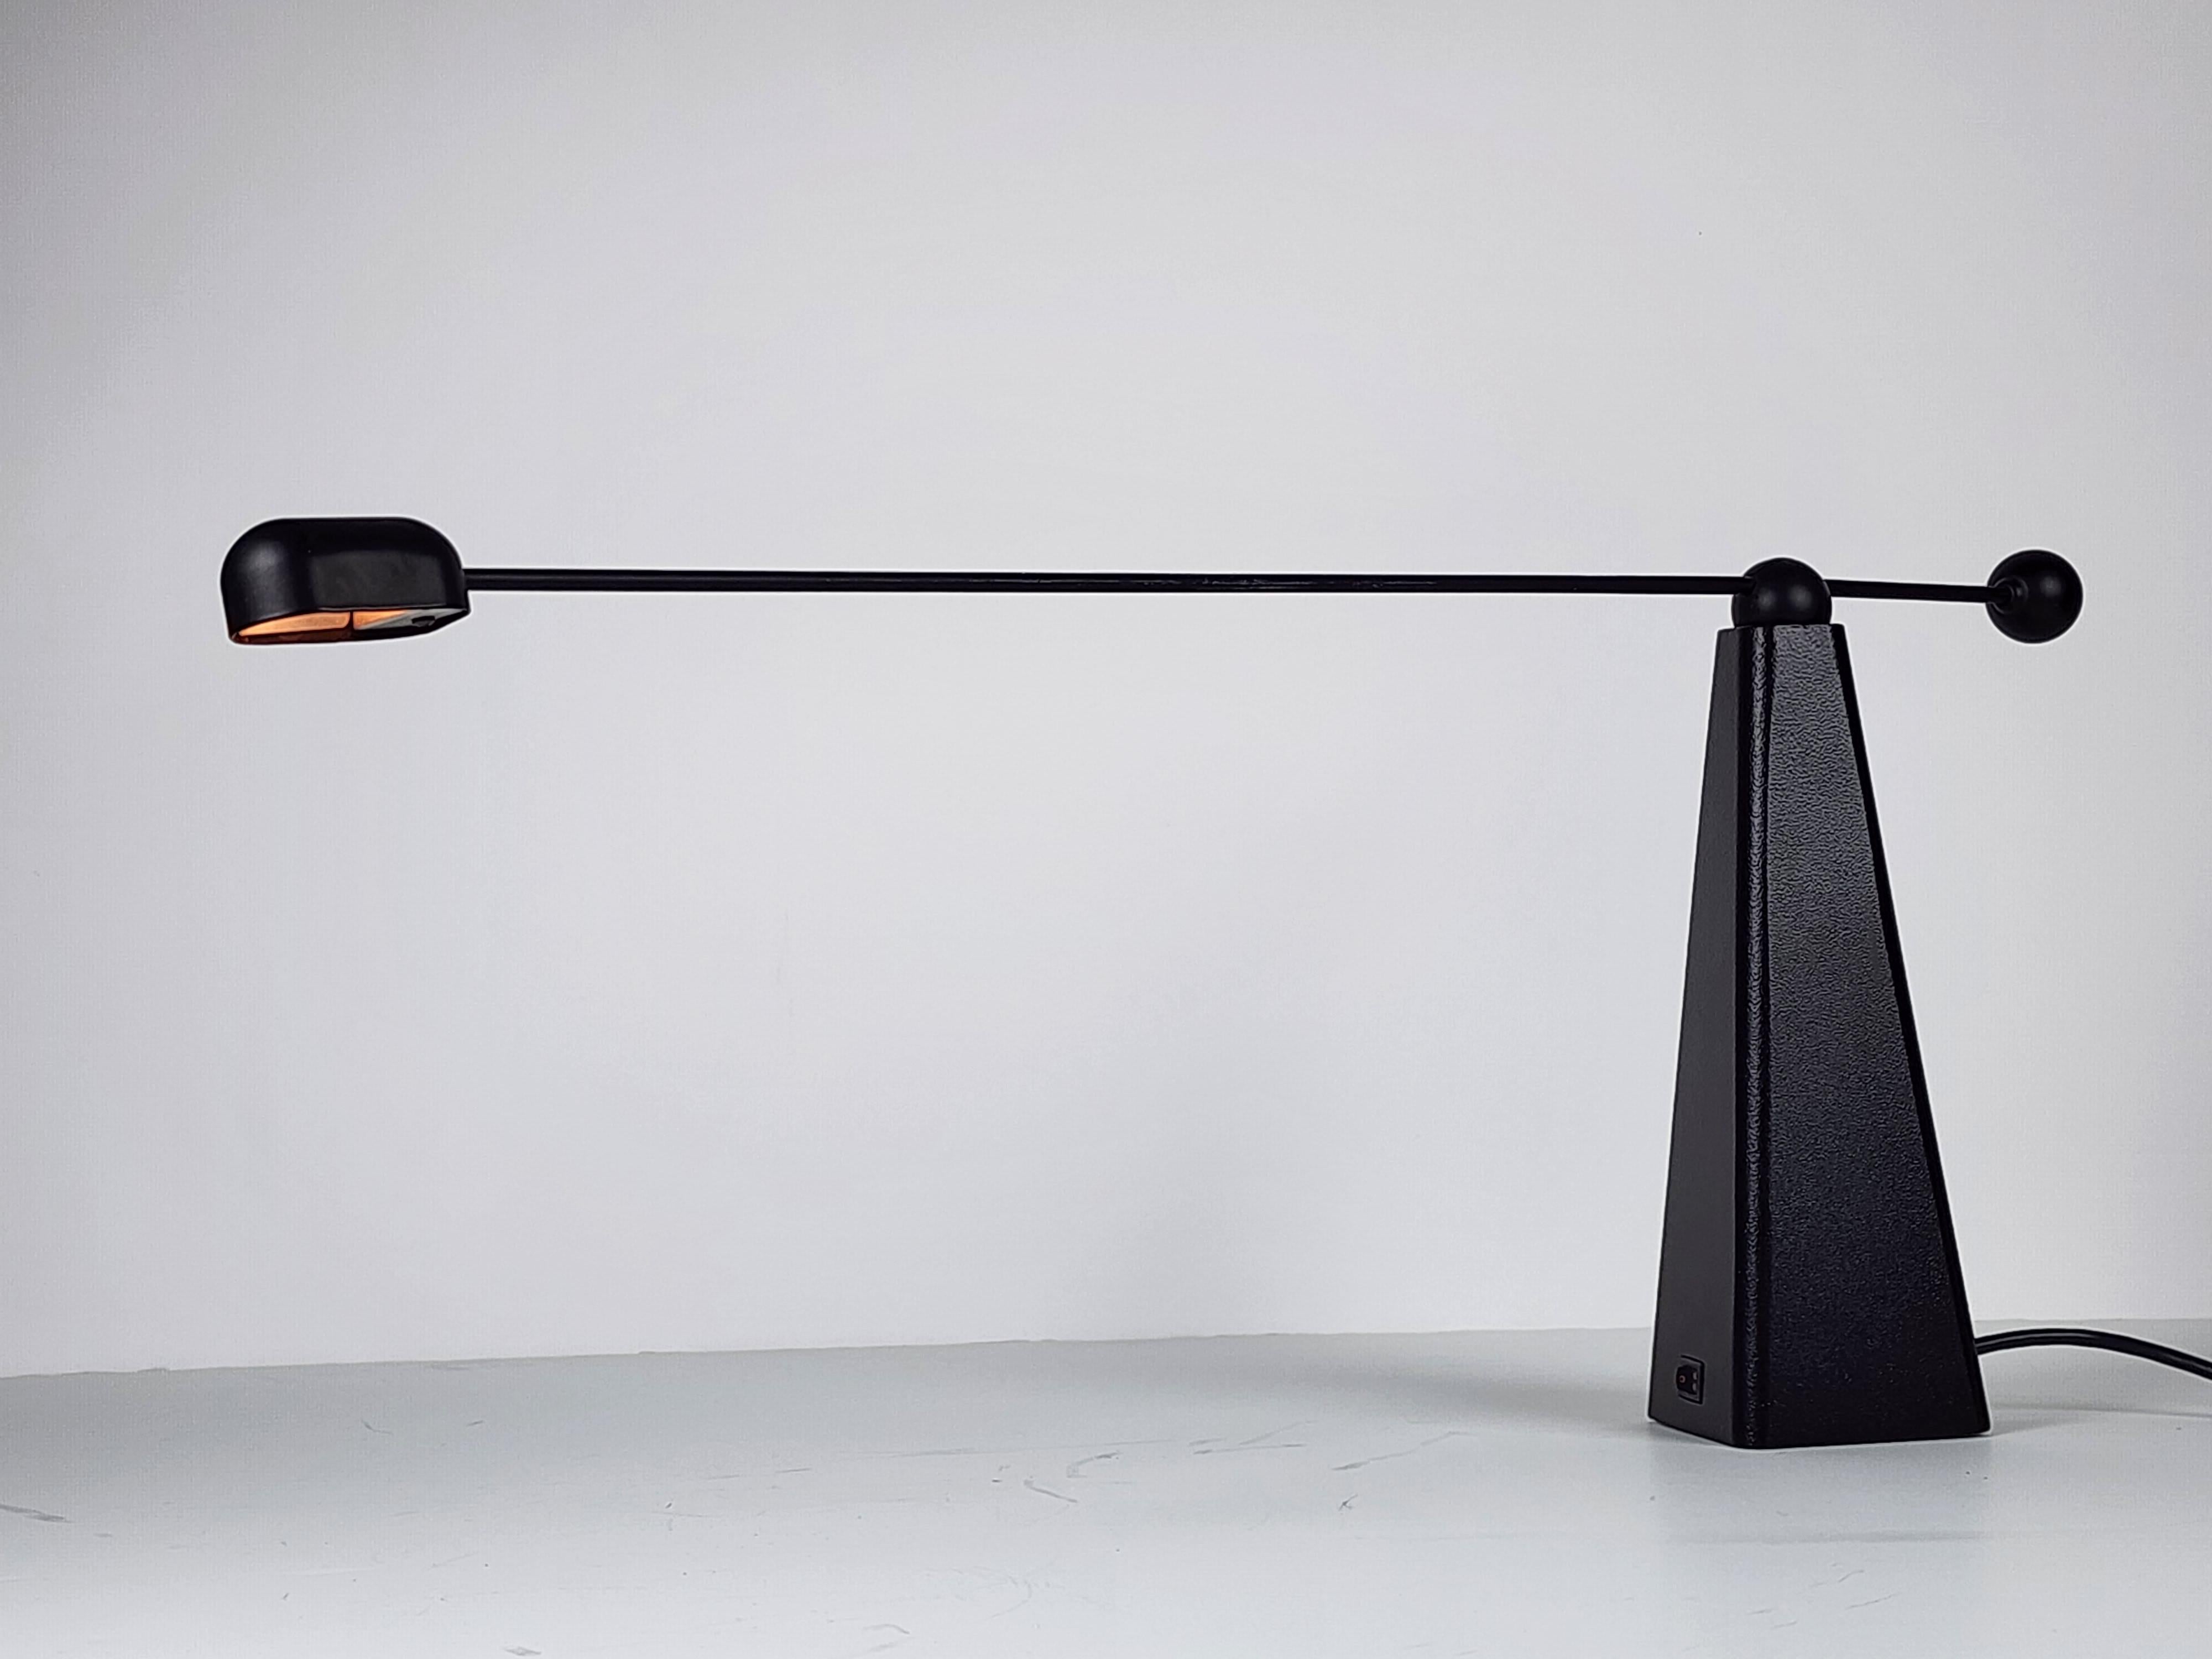 L'Icone Ron Rezek (USA)  Lampe de table halogène pour Bieffeplast, Italie.

La tige horizontale pivote vers le haut et vers le bas, vers la gauche et vers la droite sur la base de manière à obtenir différents réglages d'angle. 

Utiliser une ampoule